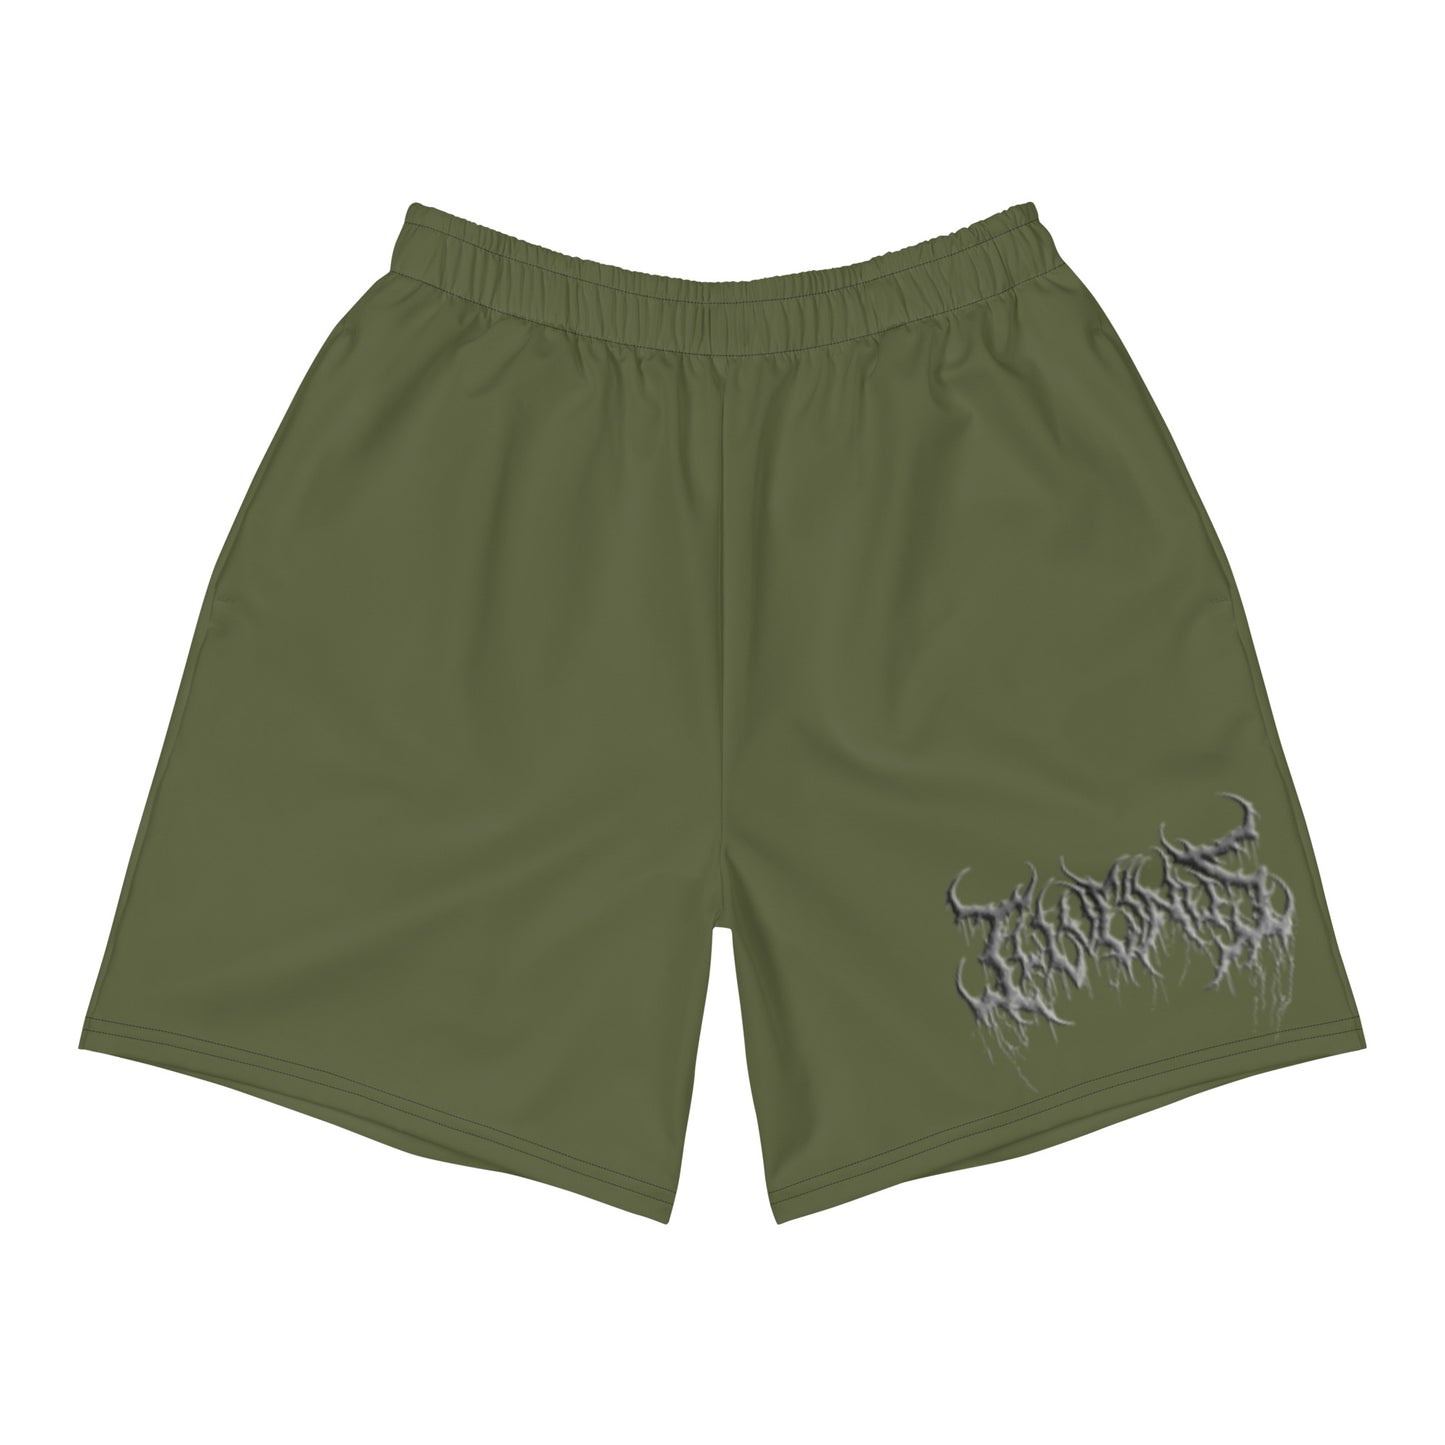 Slime n Scram Shorts - Men's, Green